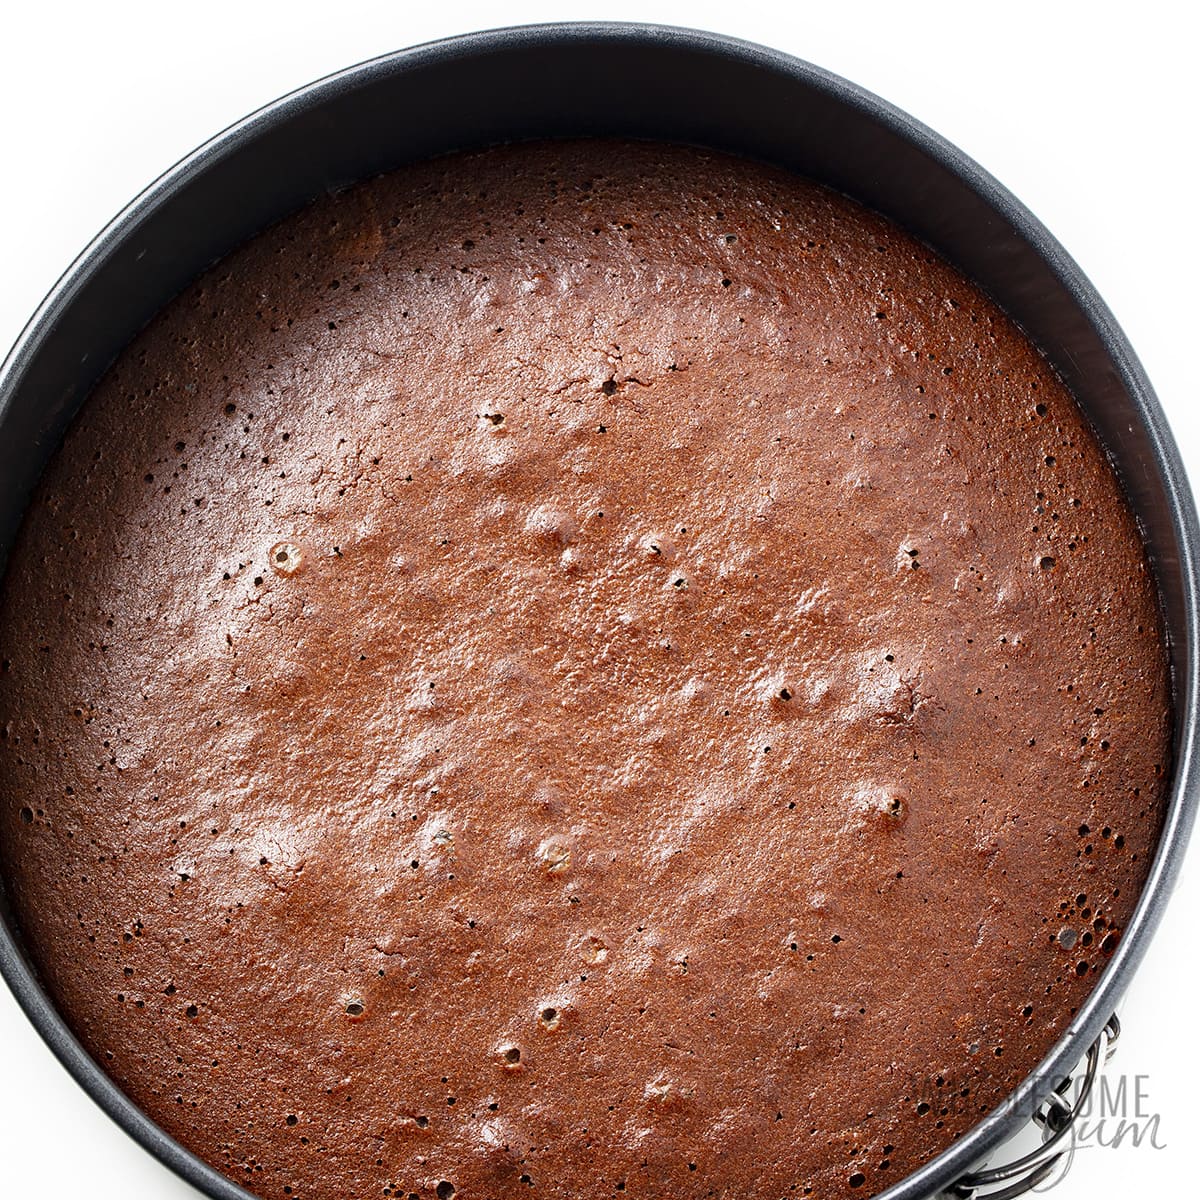 Baked keto chocolate cake in round baking pan.